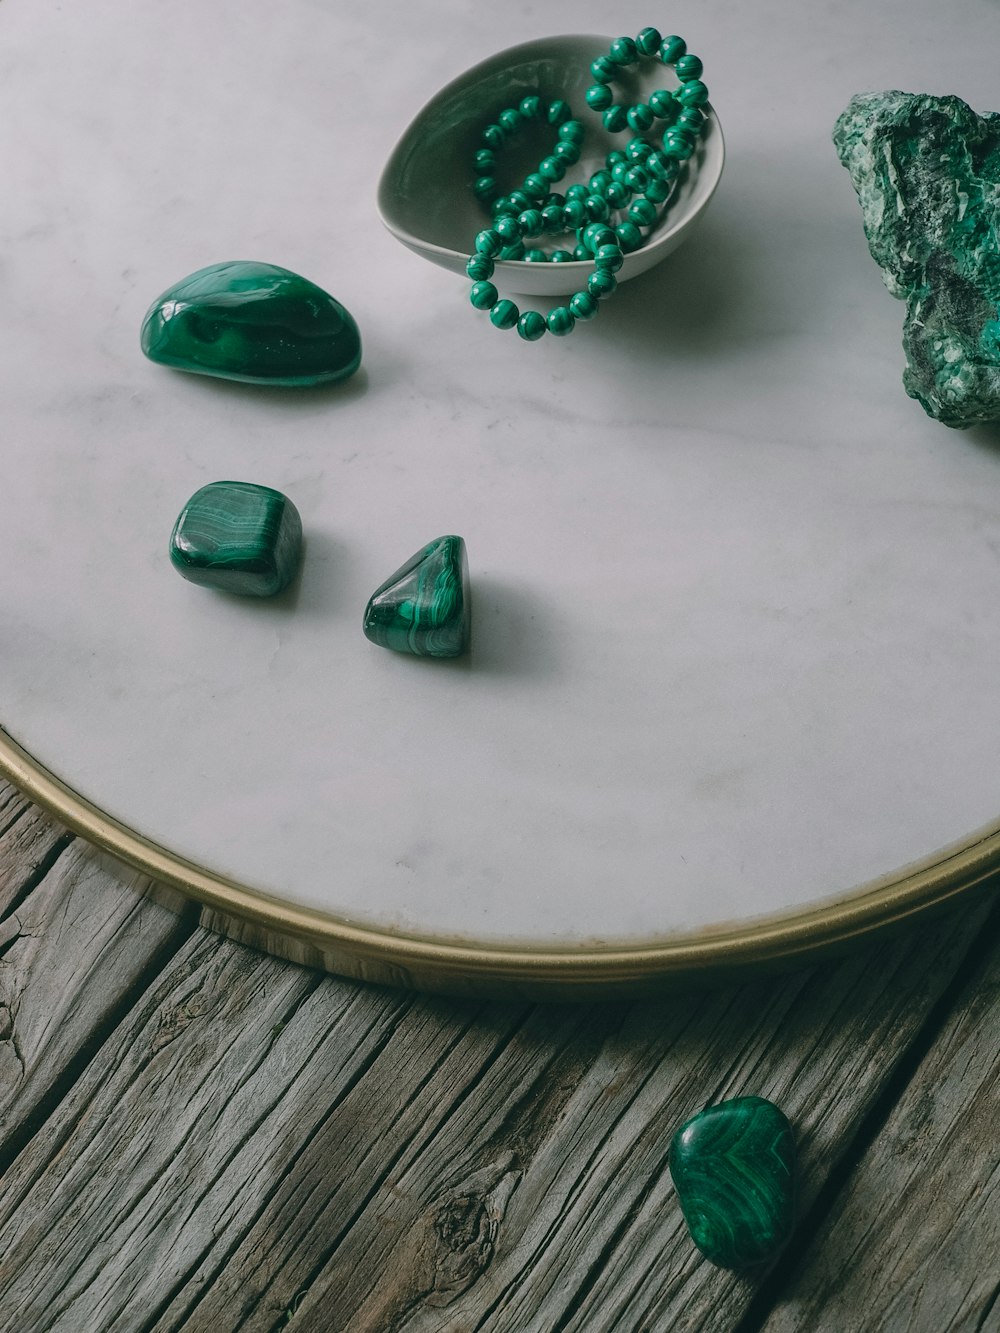 녹색 돌과 녹색 구슬 한 그릇을 얹은 테이블